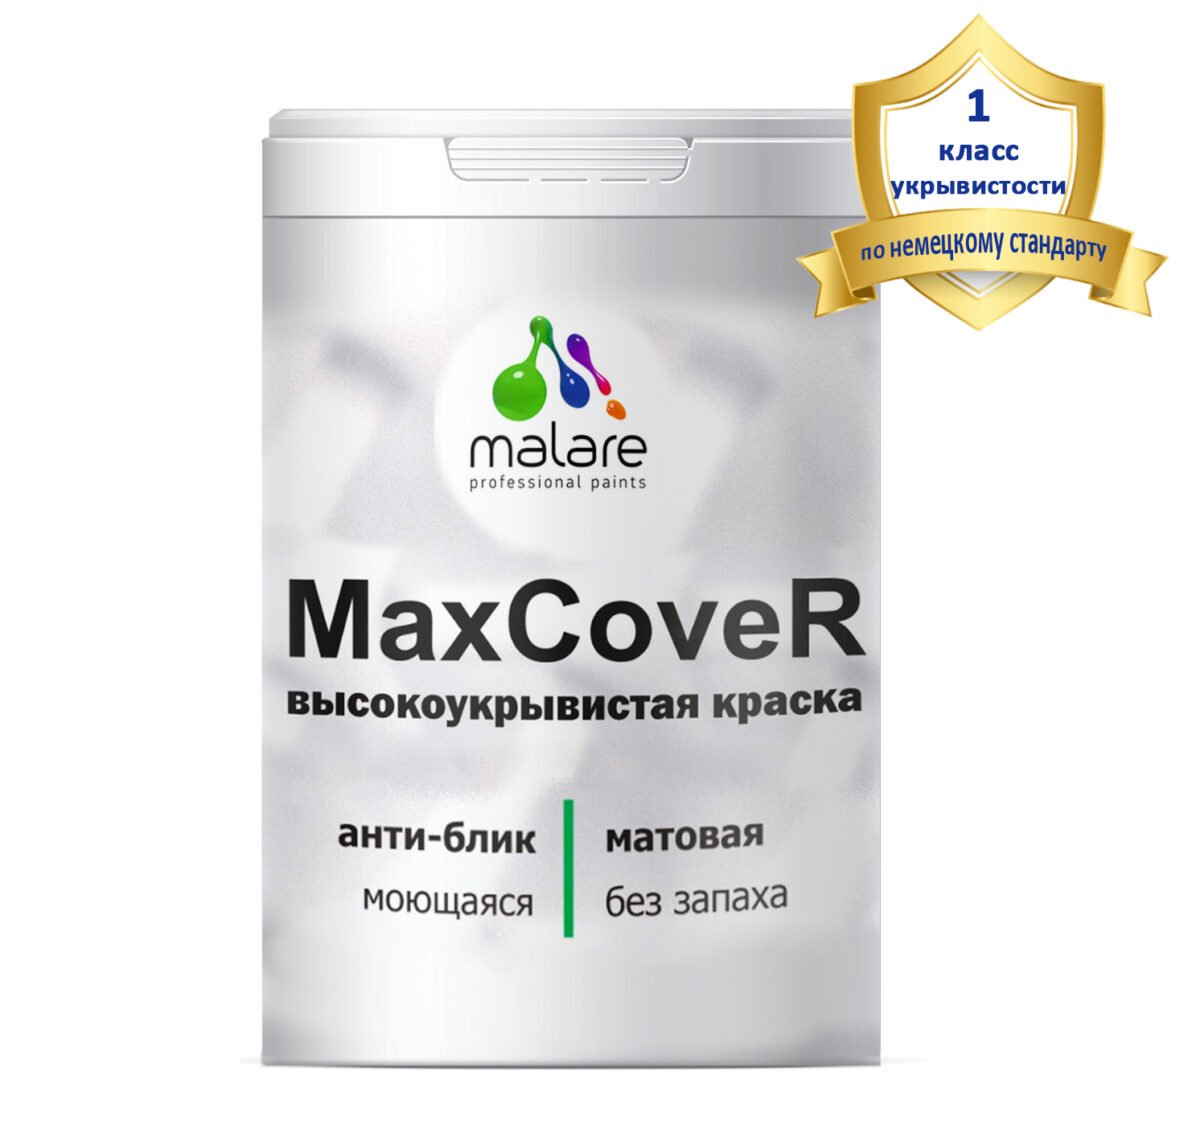 Краска Malare MaxCover высокоукрывистая для стен, обоев и потолка, анти-блик эффект, без запаха, моющаяся, матовое покрытие (2.7 л = 3.9 кг).